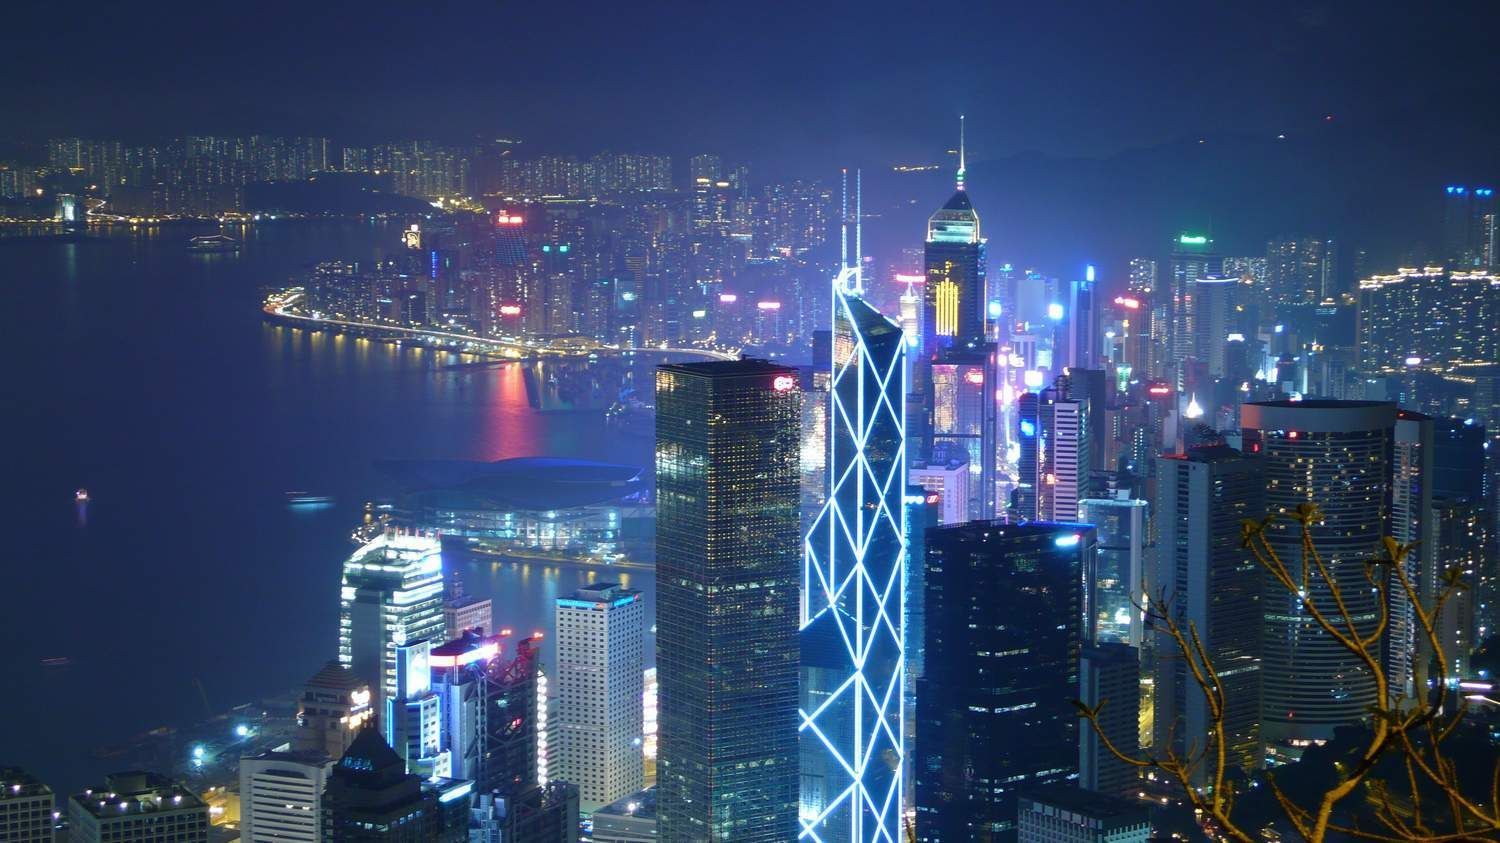 揭秘:上海还是不如香港,虽然上海很繁华,但是没